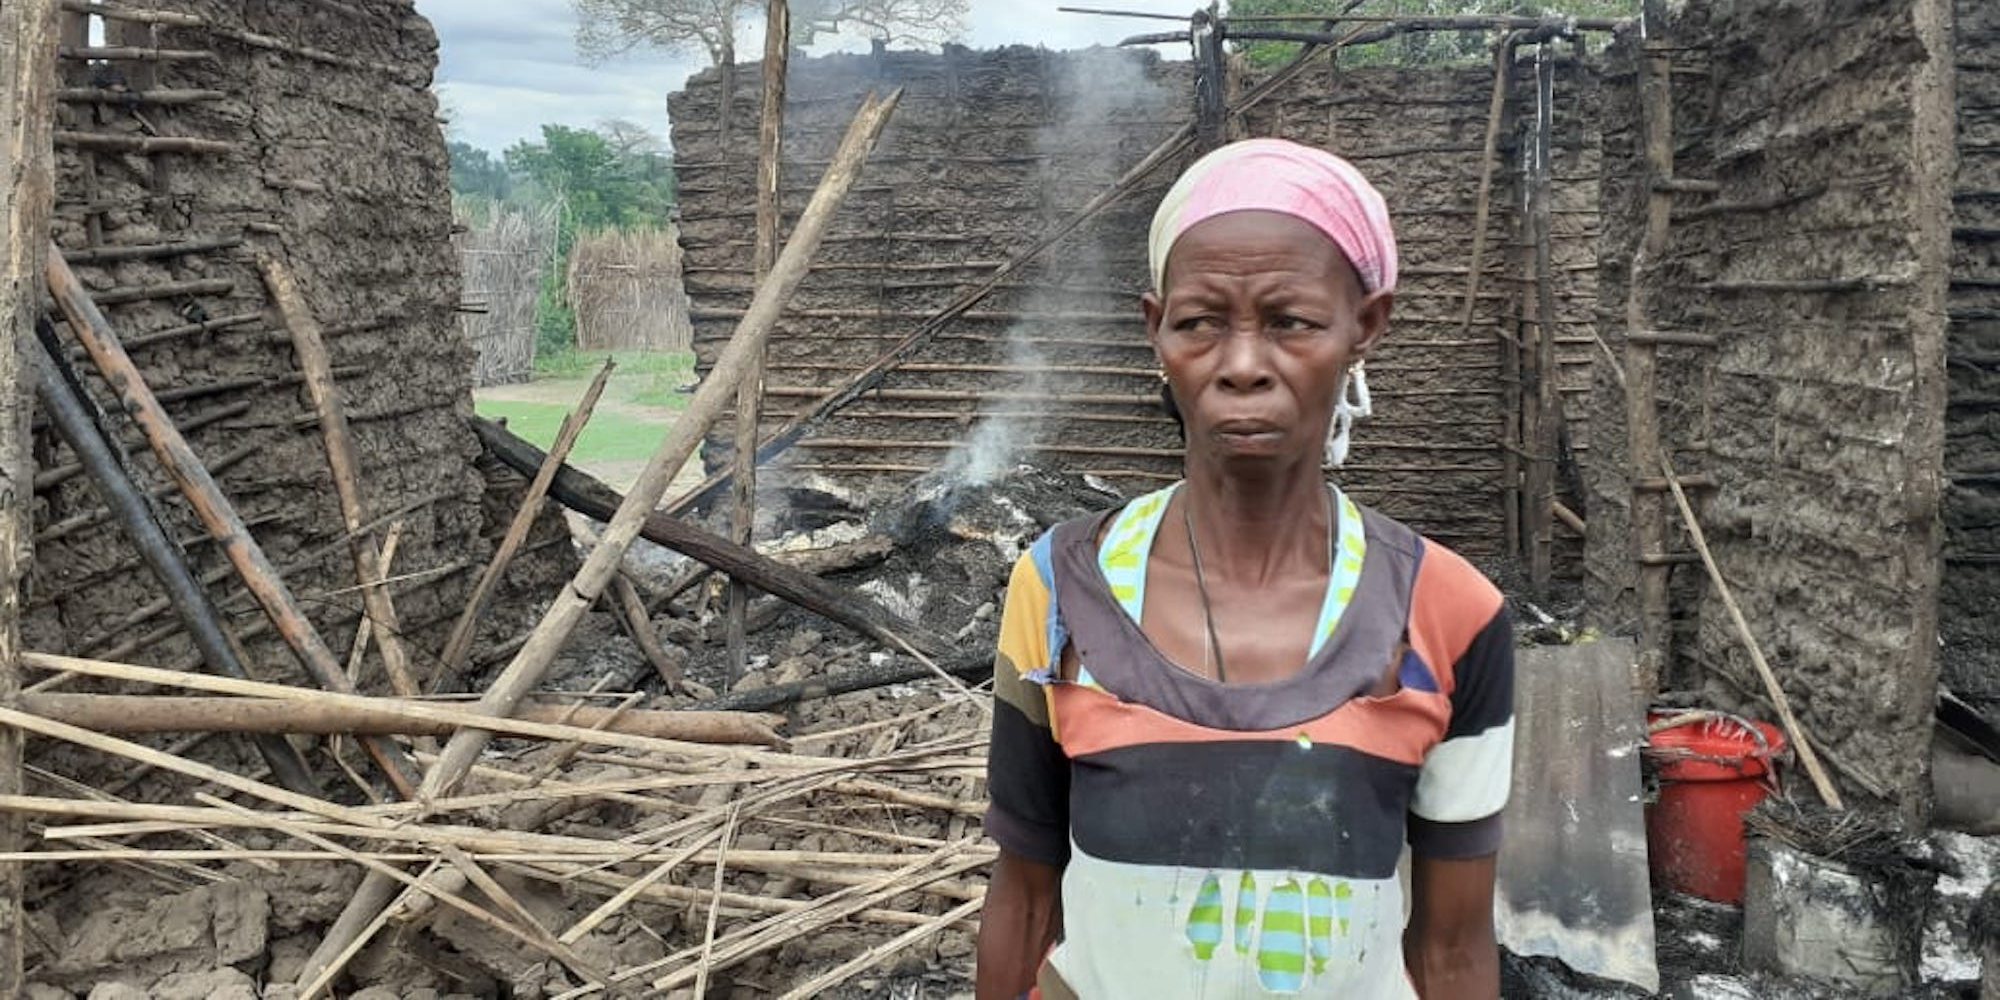 Depois de fugirem das aldeias sob ataque, os habitantes encontraram as suas casas em cinzas